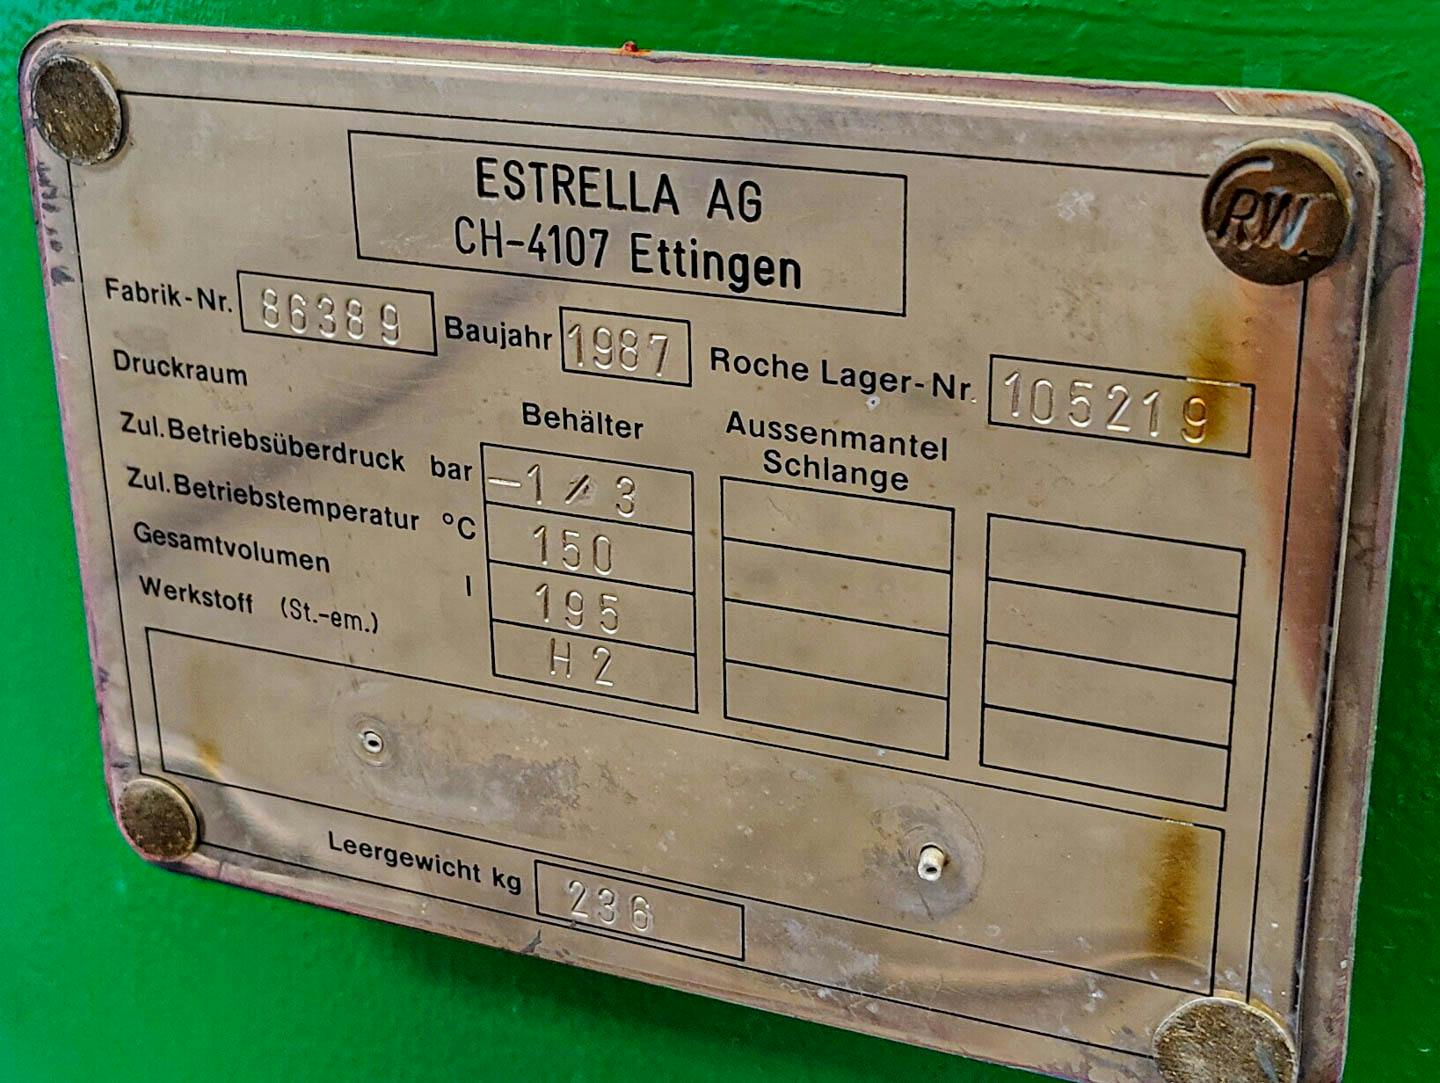 Estrella 195Ltr. - Pressure vessel - image 13